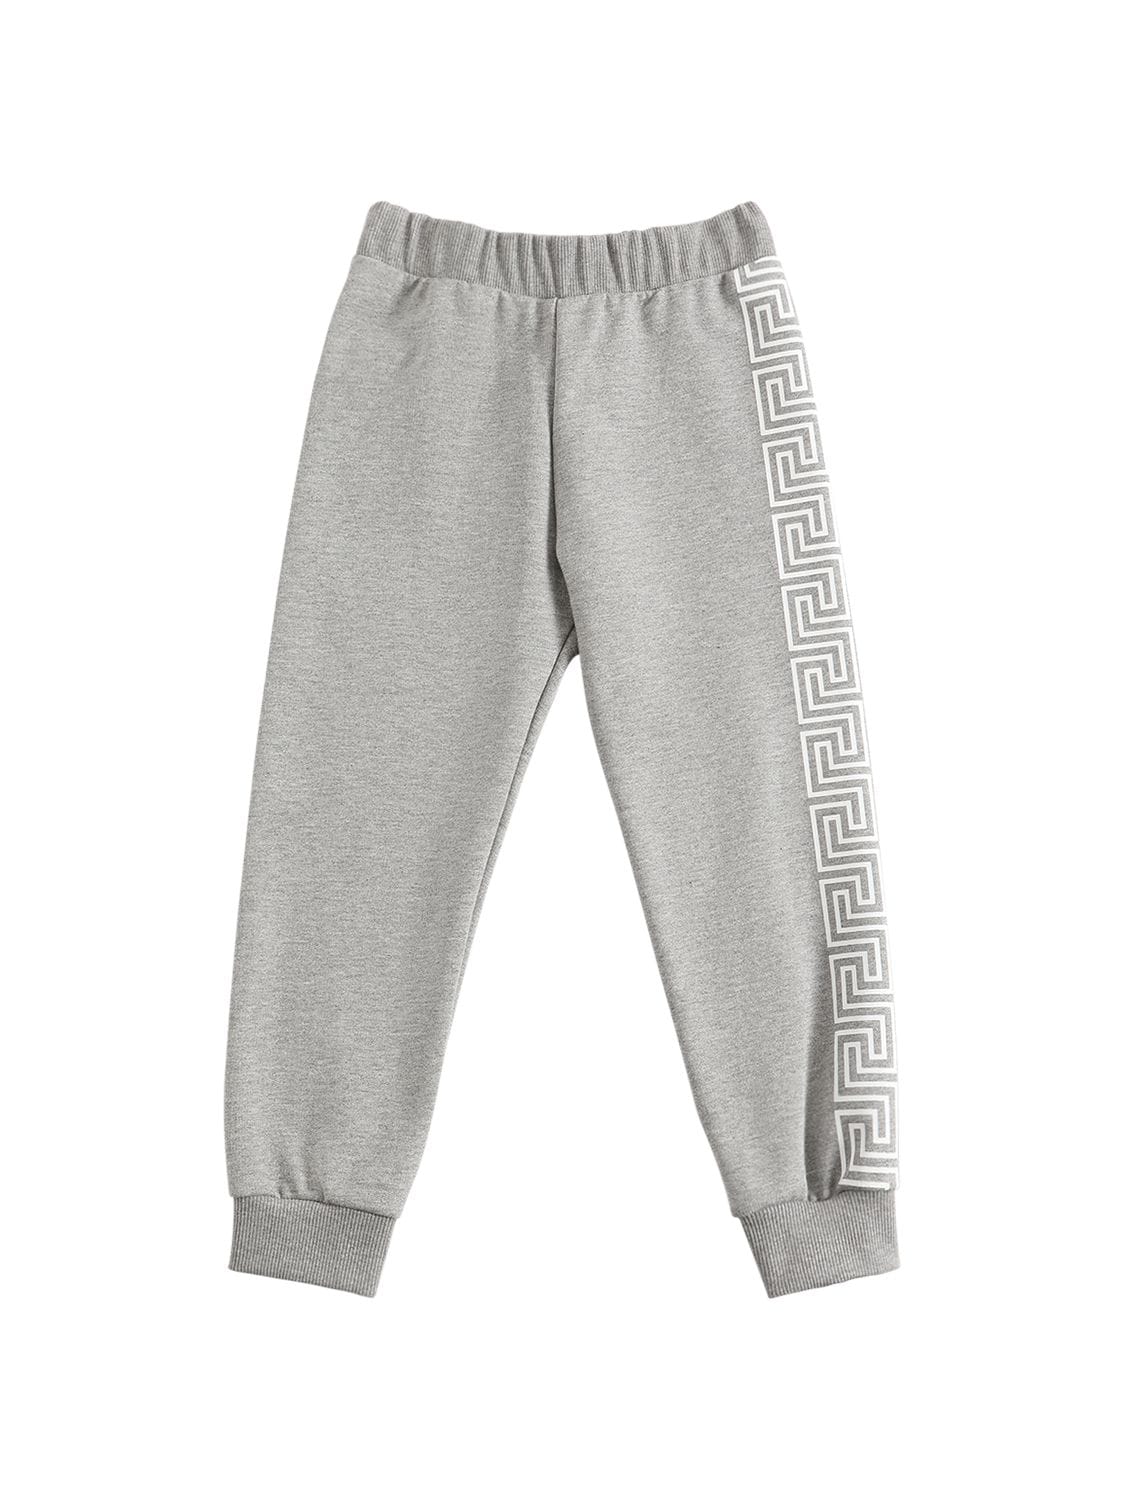 Versace Kids' Greca Print Cotton Sweatpants In Grey